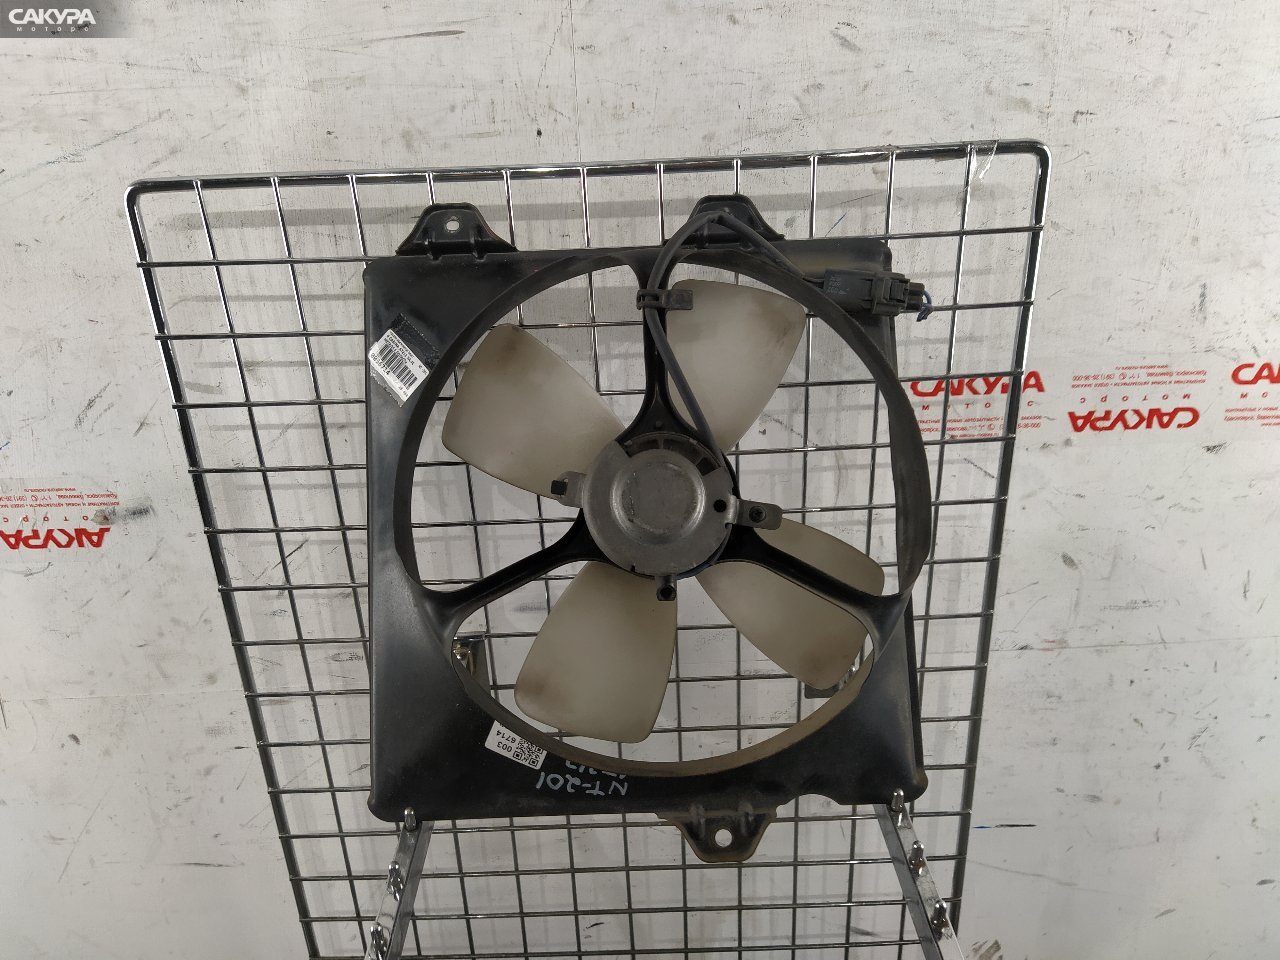 Вентилятор радиатора двигателя правый Toyota Carina AT212 5A-FE: купить в Сакура Красноярск.